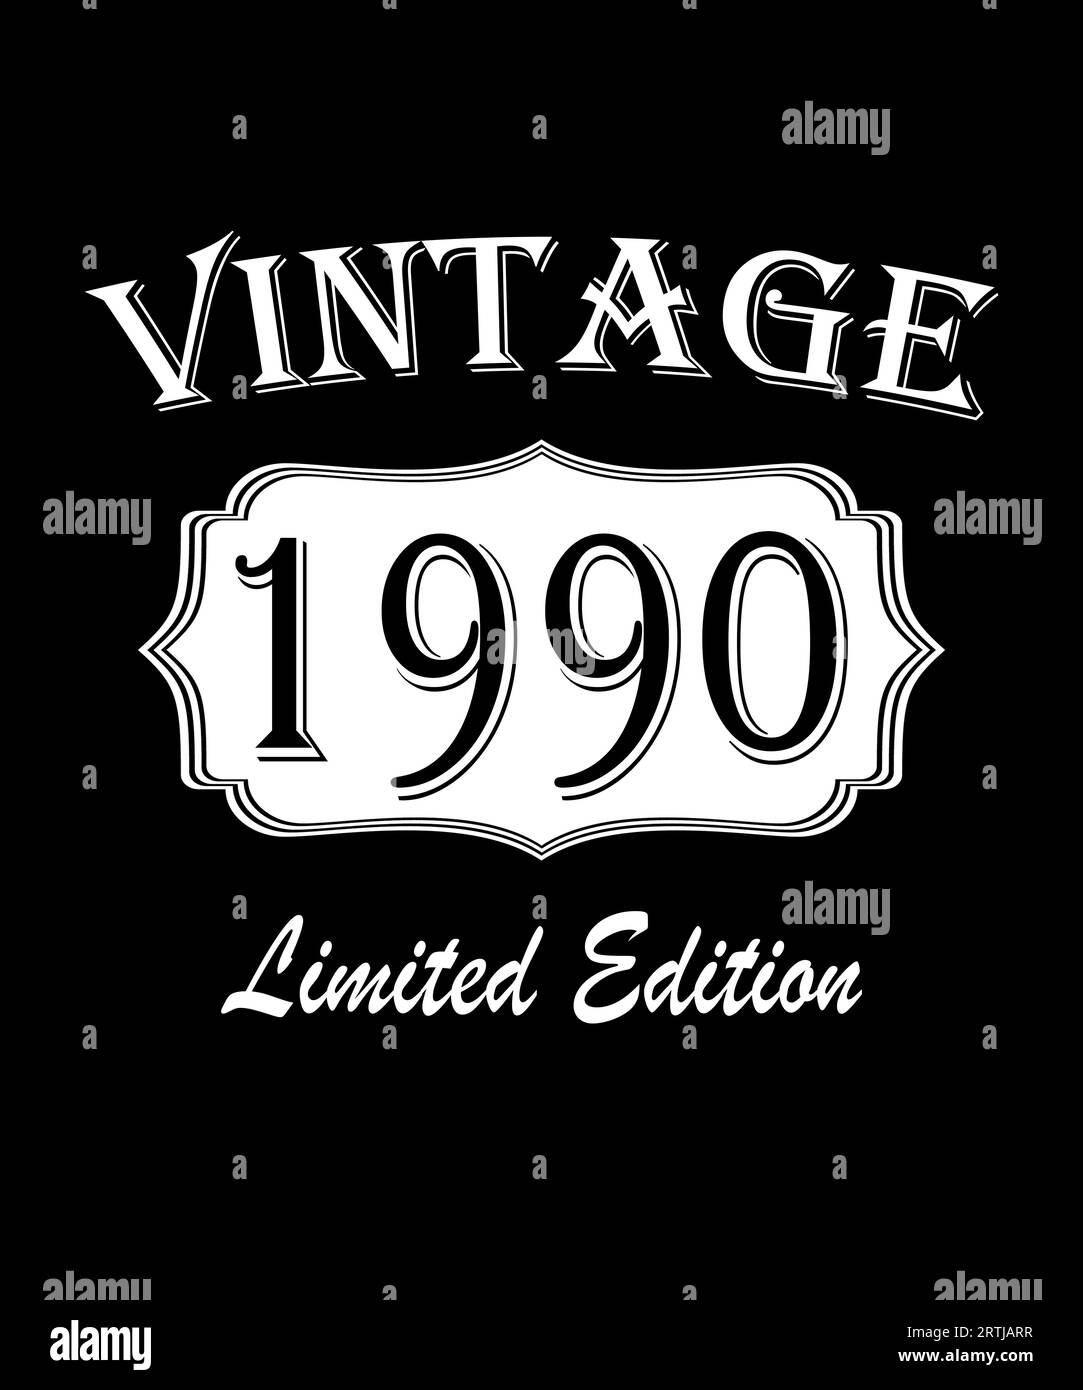 Super Seit 1990. Geboren im Jahr 1990 Vintage Geburtstag Zitat Design. Stockfoto